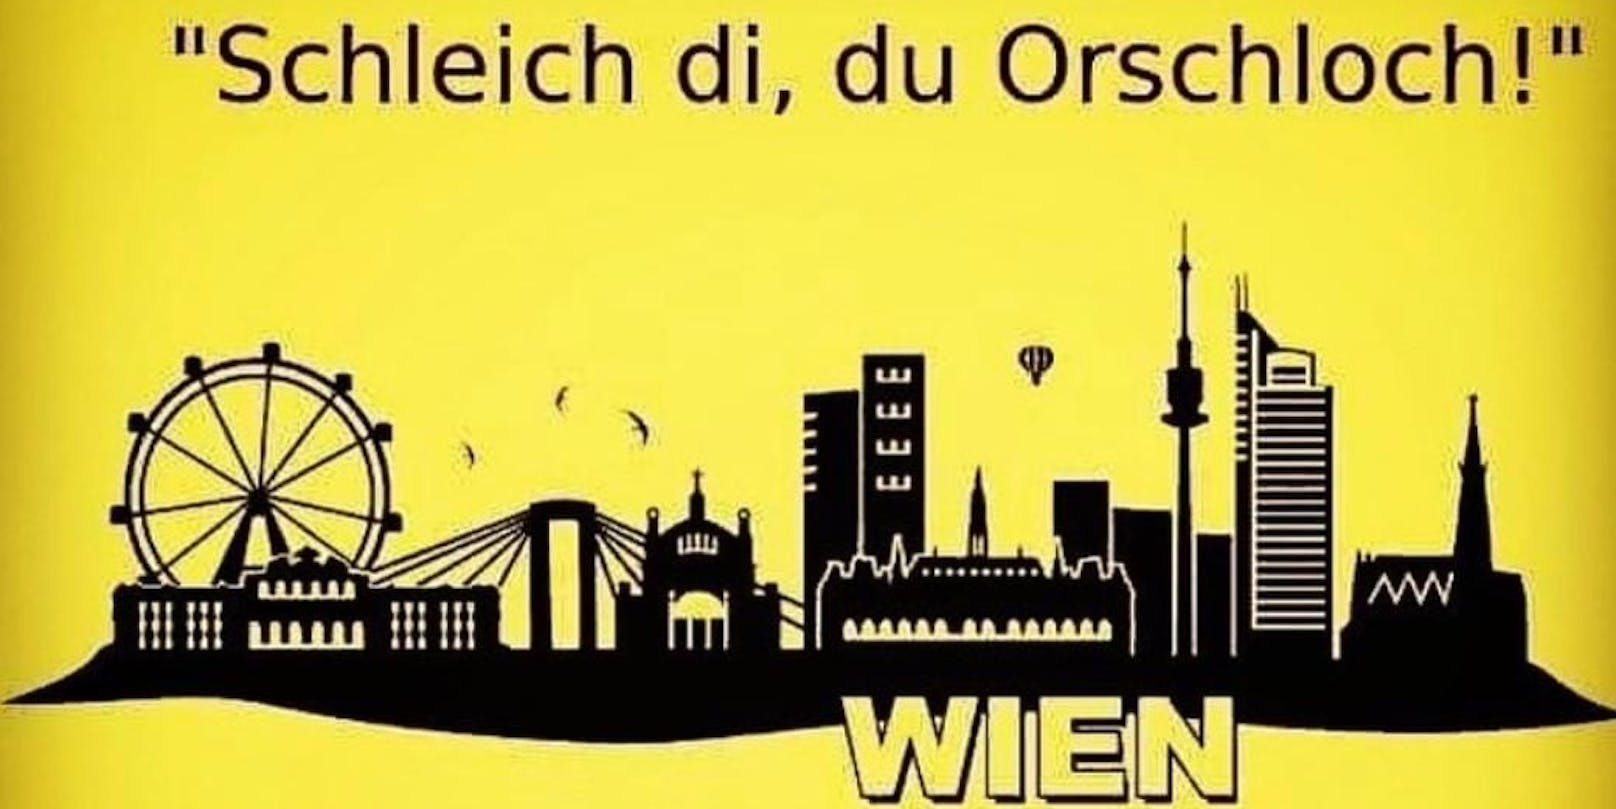 "Schleich di, du Orschloch", rief ein Wiener vom Fenster.